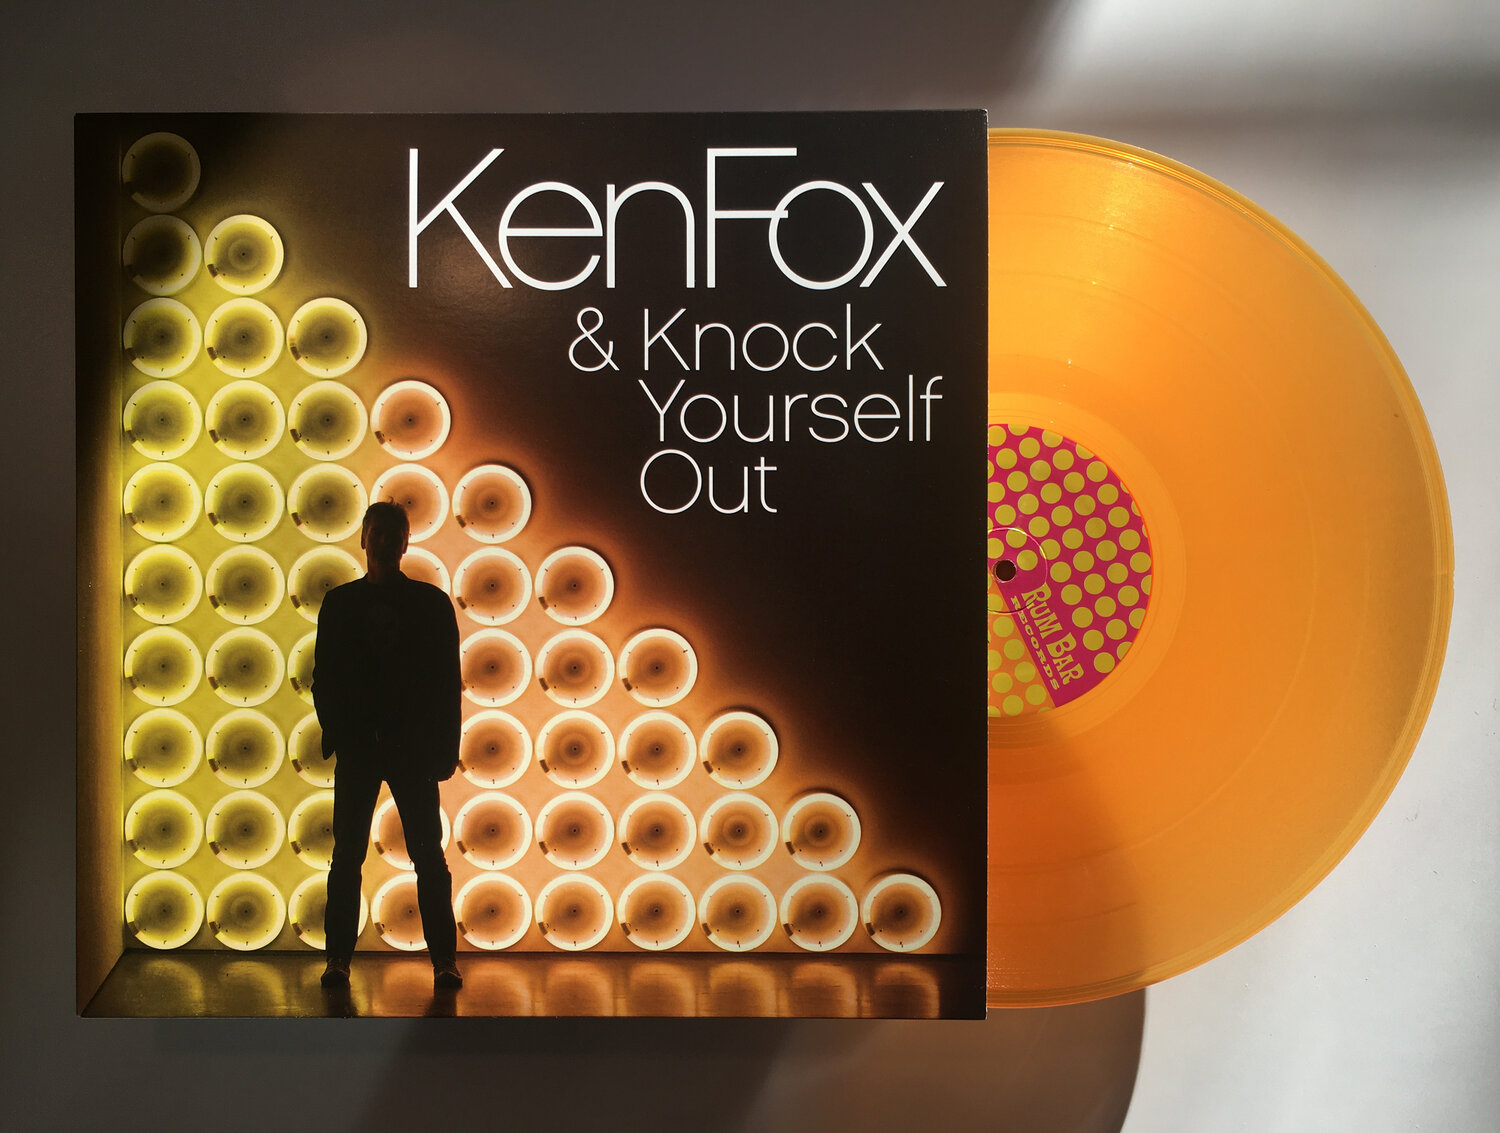 Postea el último vinilo que hayas comprado - Página 3 Ken-fox-kyo-orange-vinyl